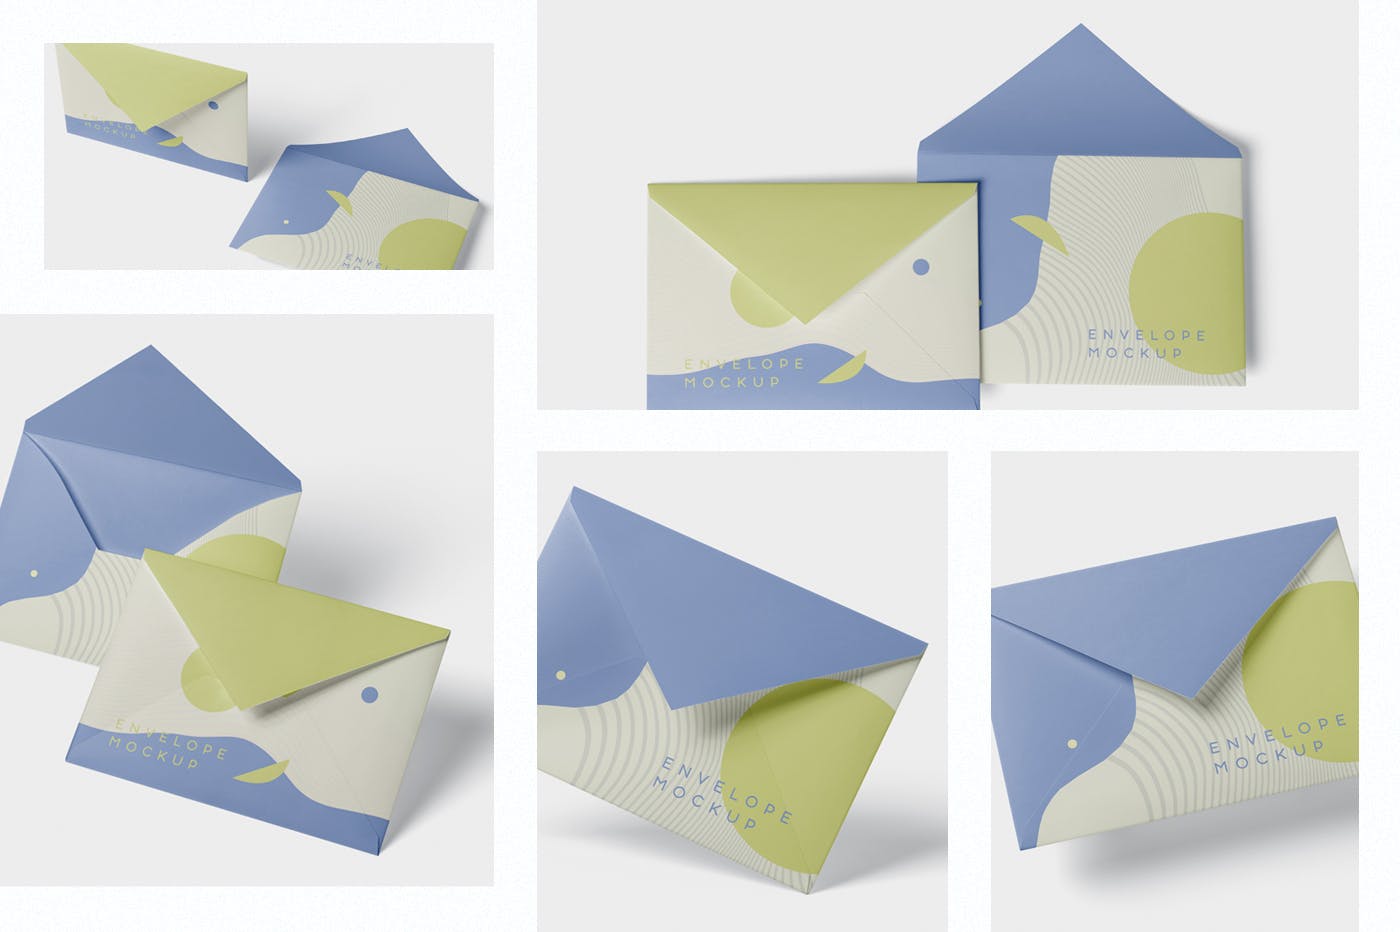 高端企业信封外观设计图第一素材精选模板 Envelope C5 – C6 Mock-Up Set插图(1)